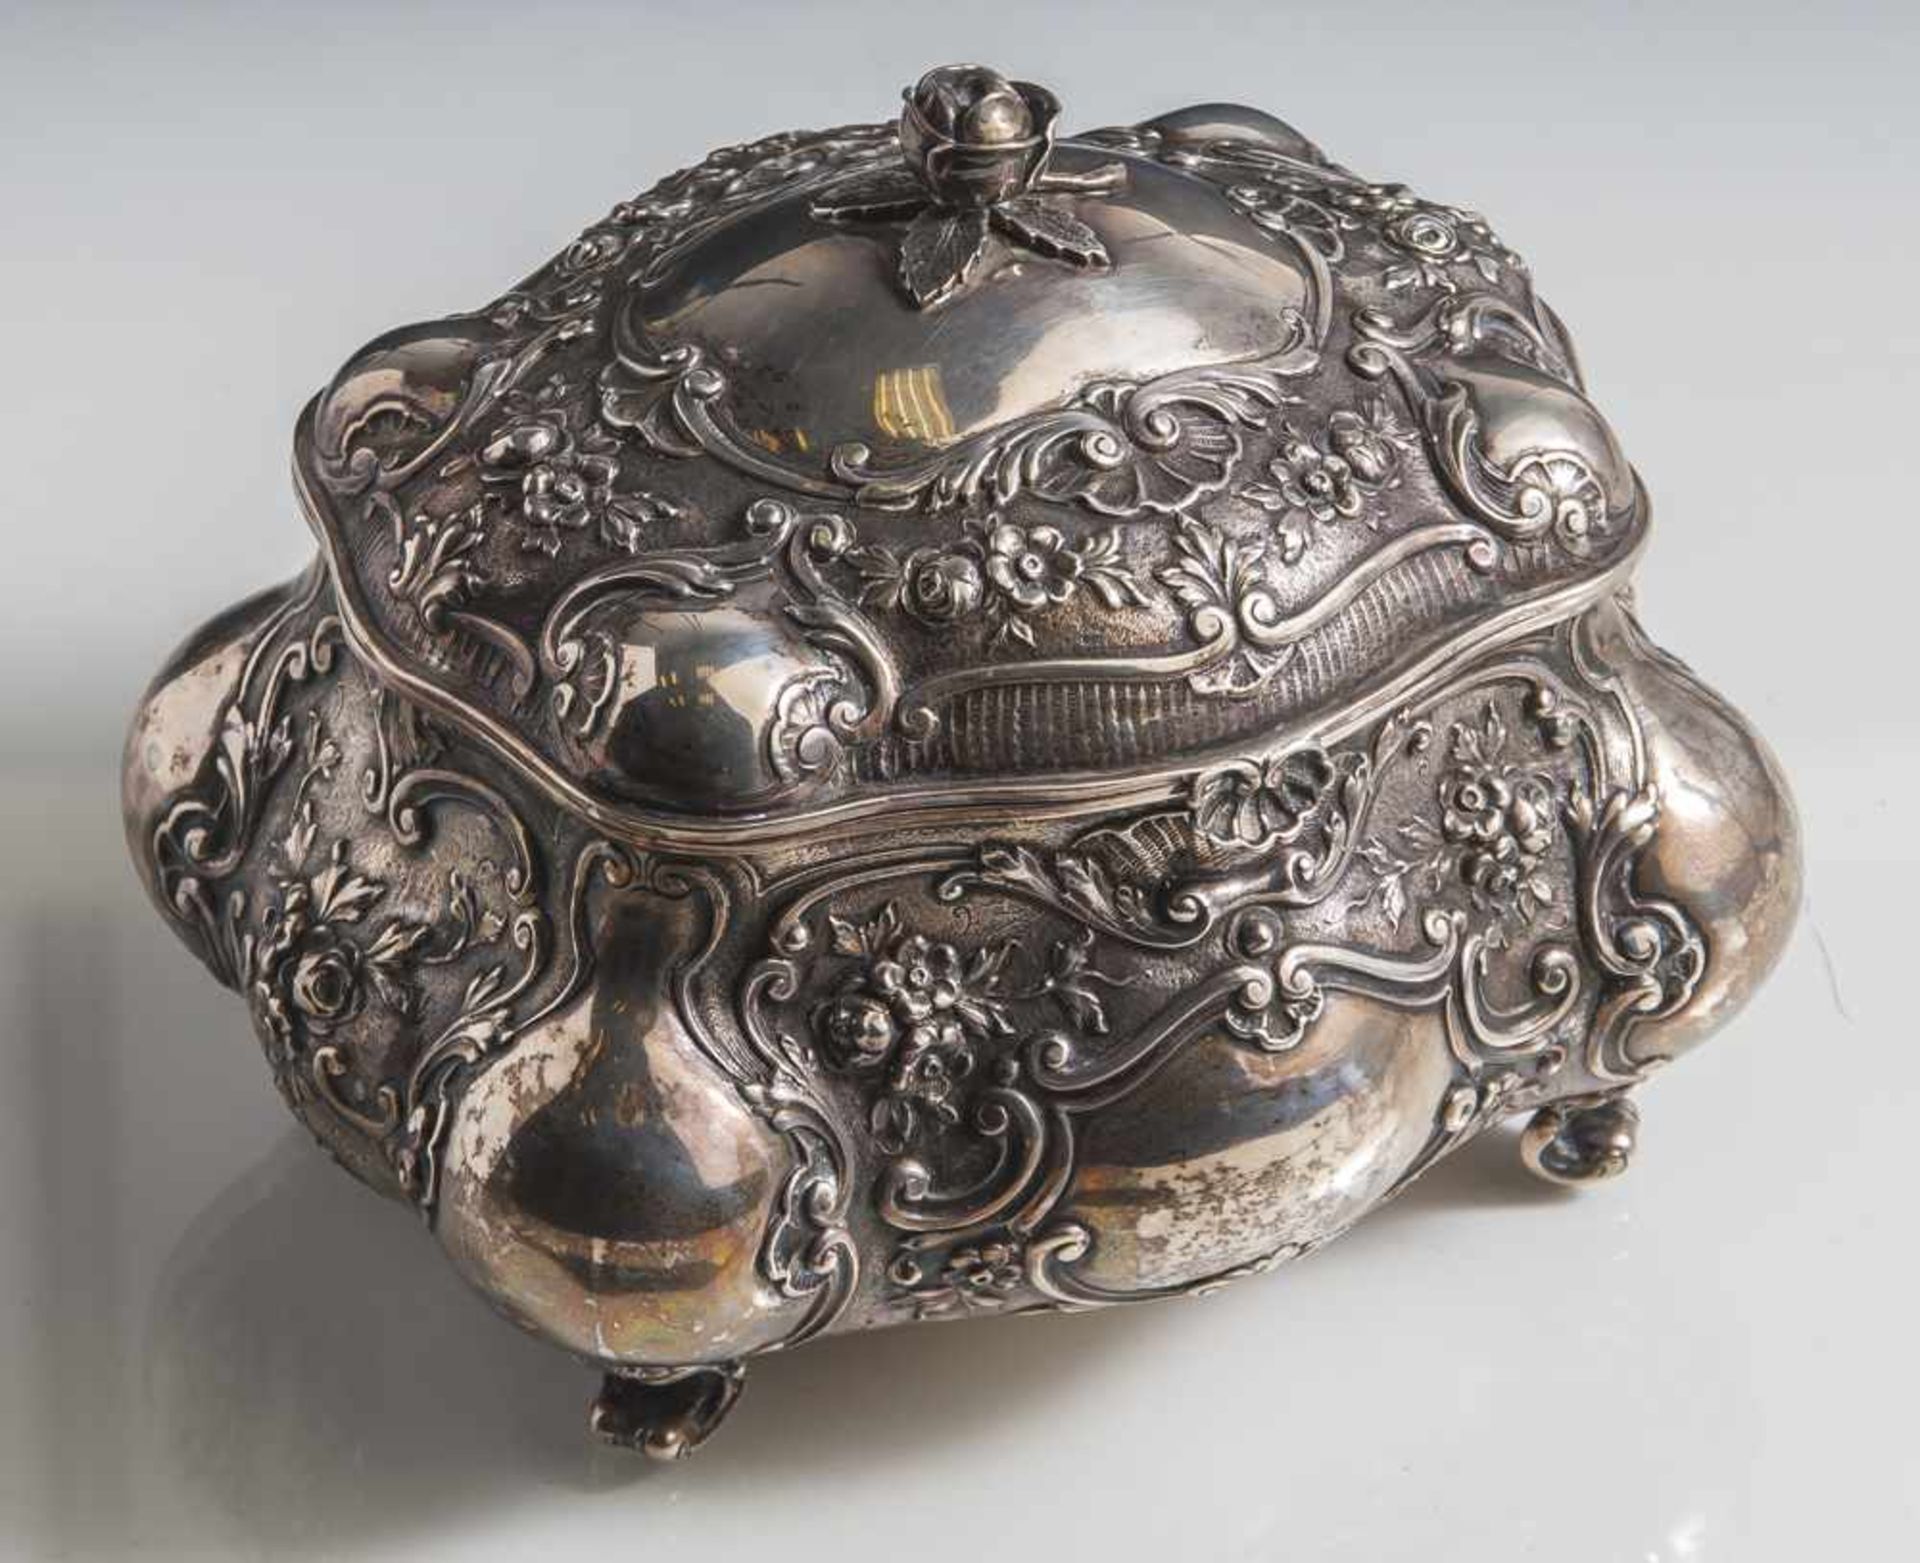 Deckeldose, 19. Jahrhundert, Silber 800, gepunzt Feingehalt, Halbmond und Krone, über vier